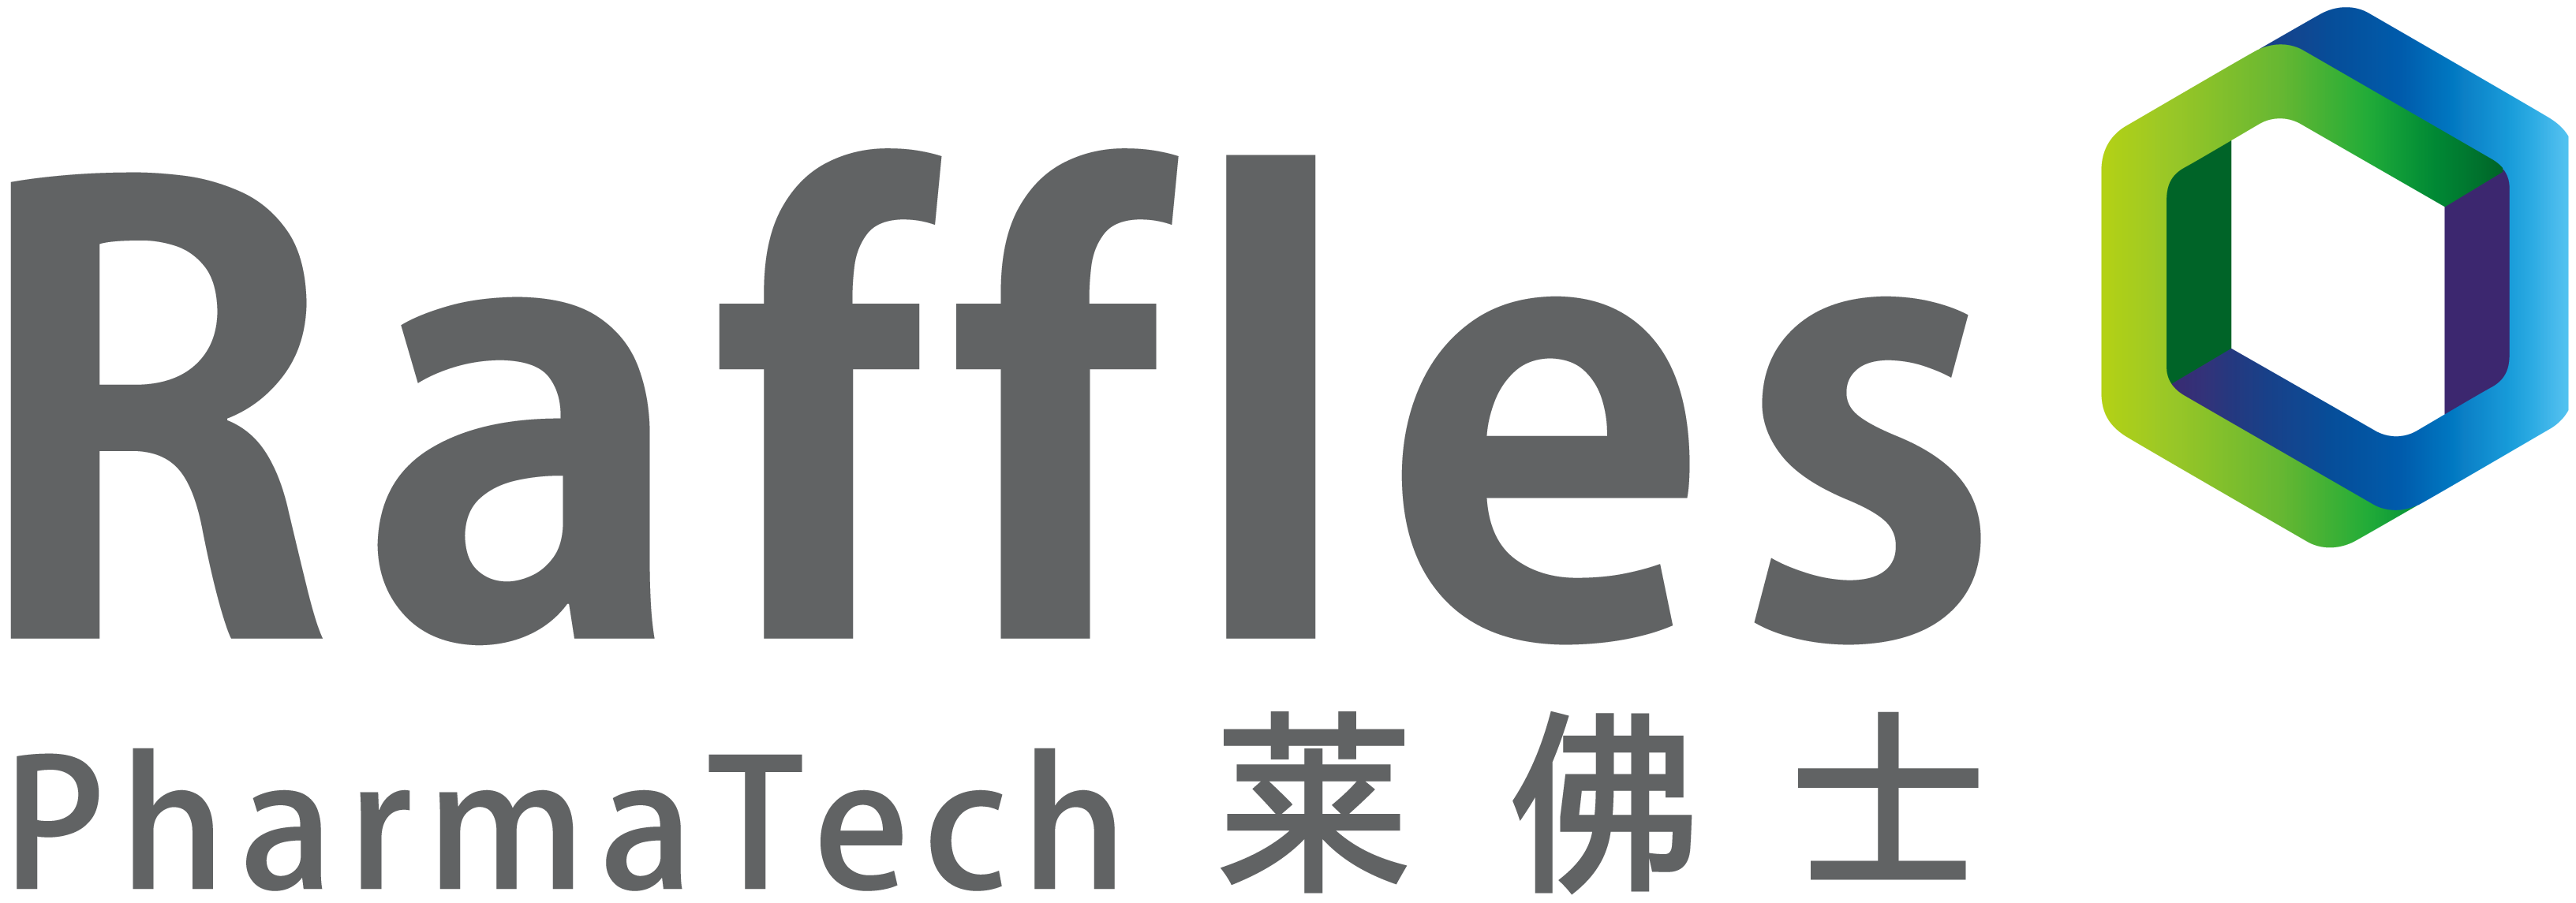 Logo for Raffles Pharmatech